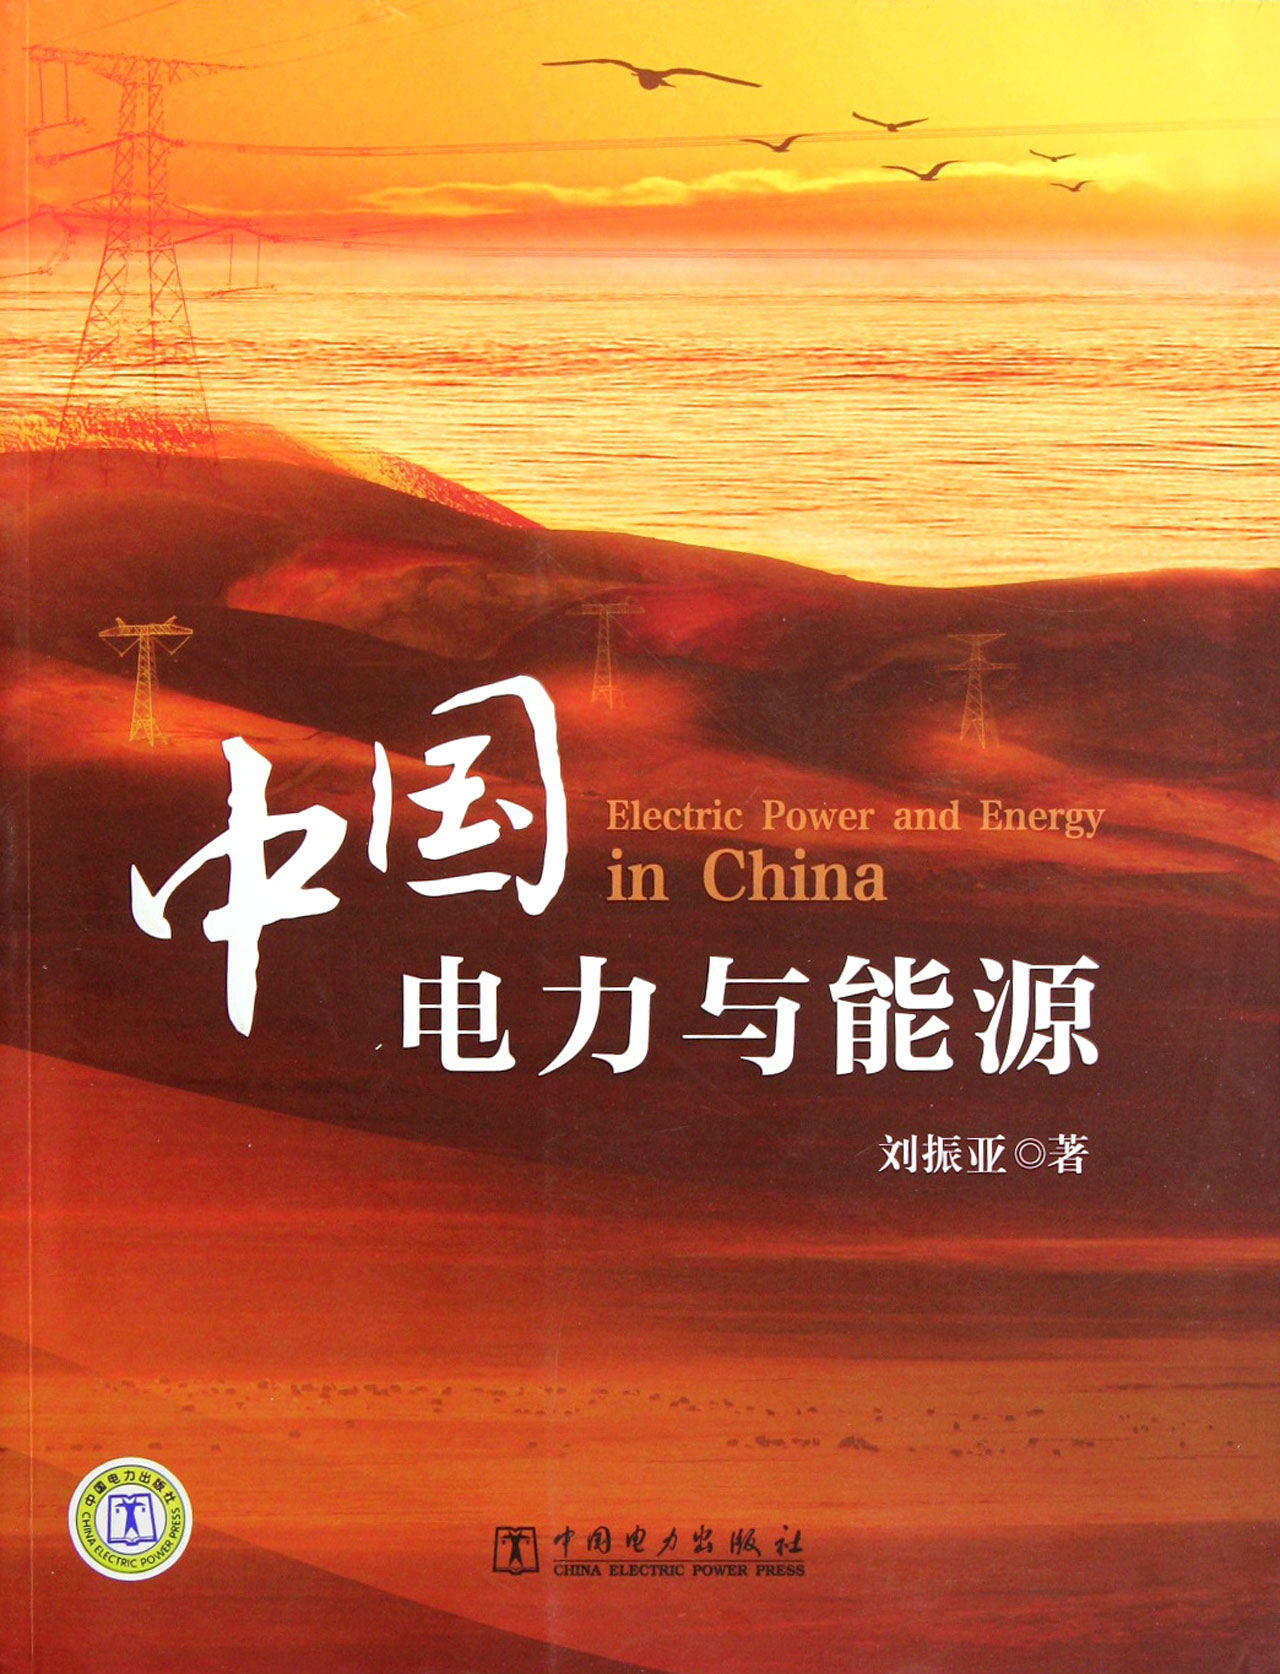 中国电力与能源 工业技术 刘振亚著 中国电力出版社 9787512326675 kindle格式下载